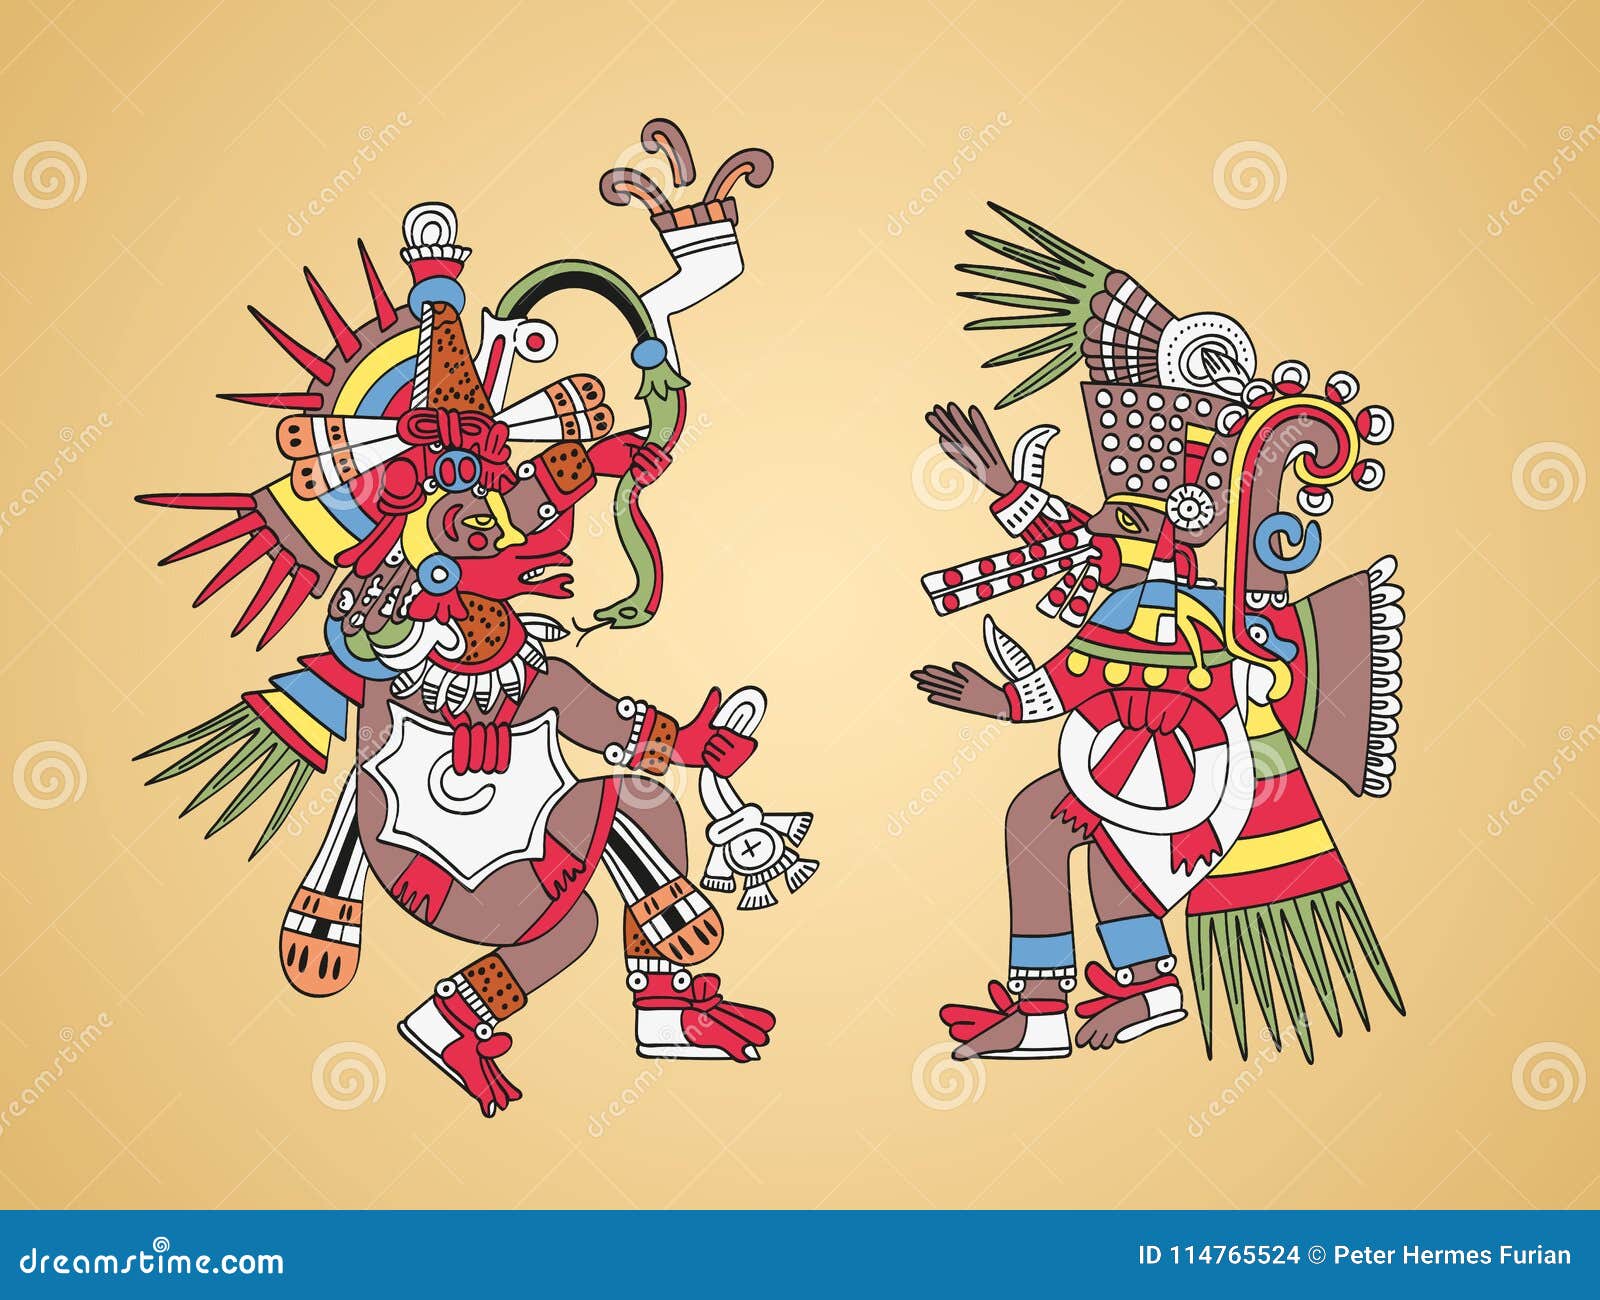 quetzalcoatl aztec god wallpaper